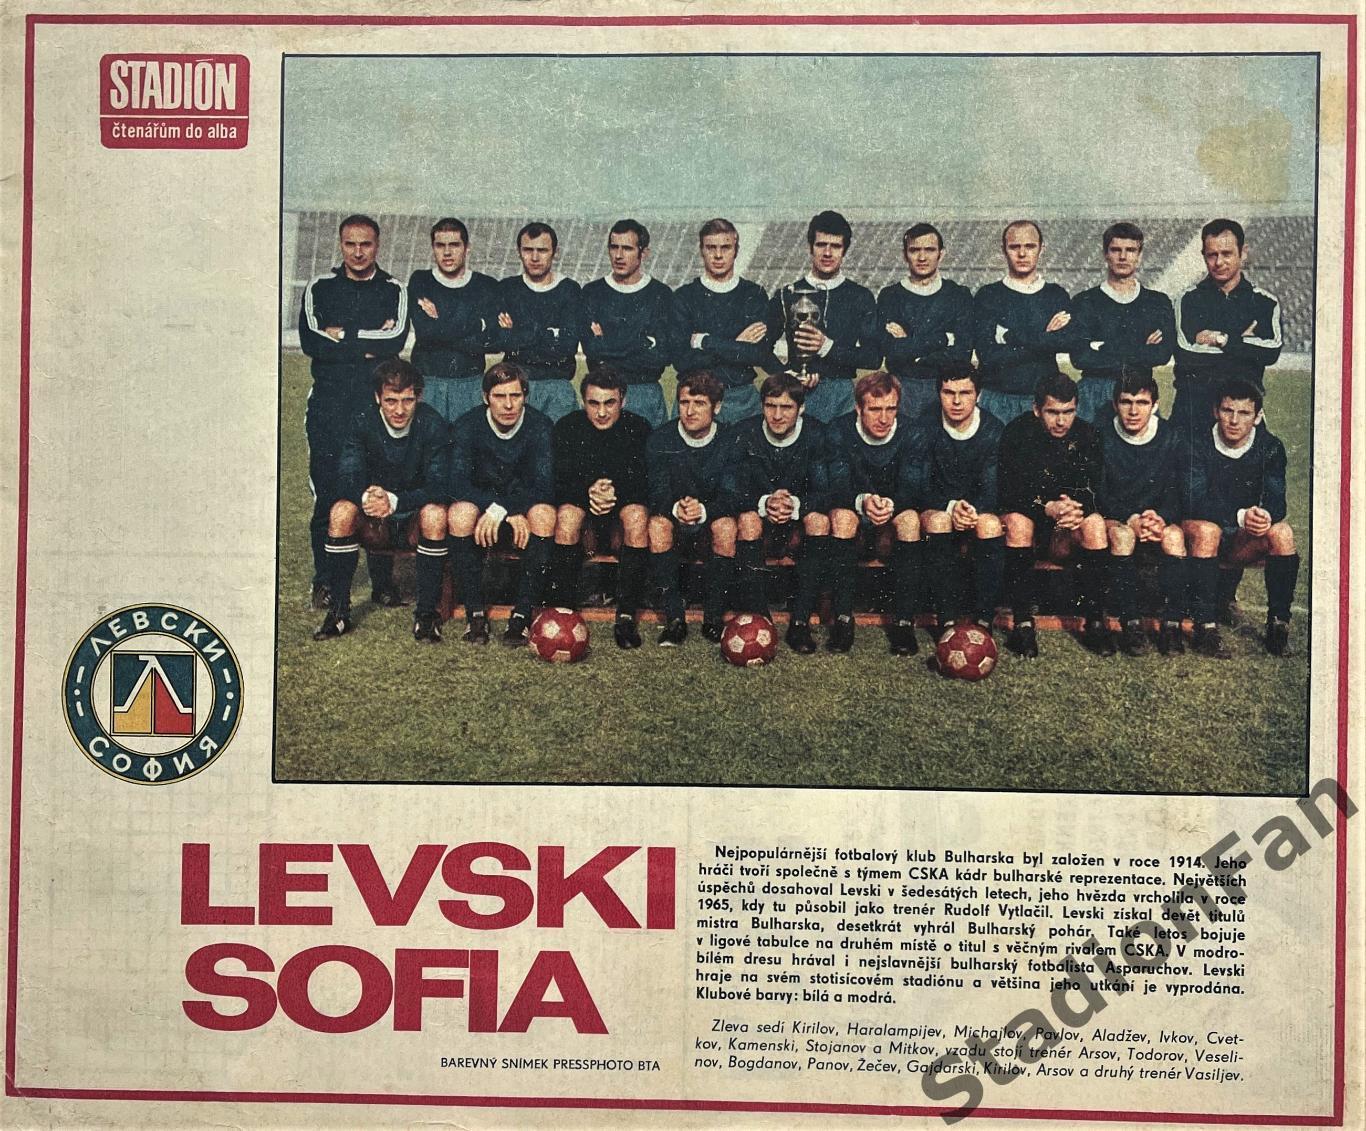 Постер из журнала Стадион (Stadion) - Levski Sofia, 1972.